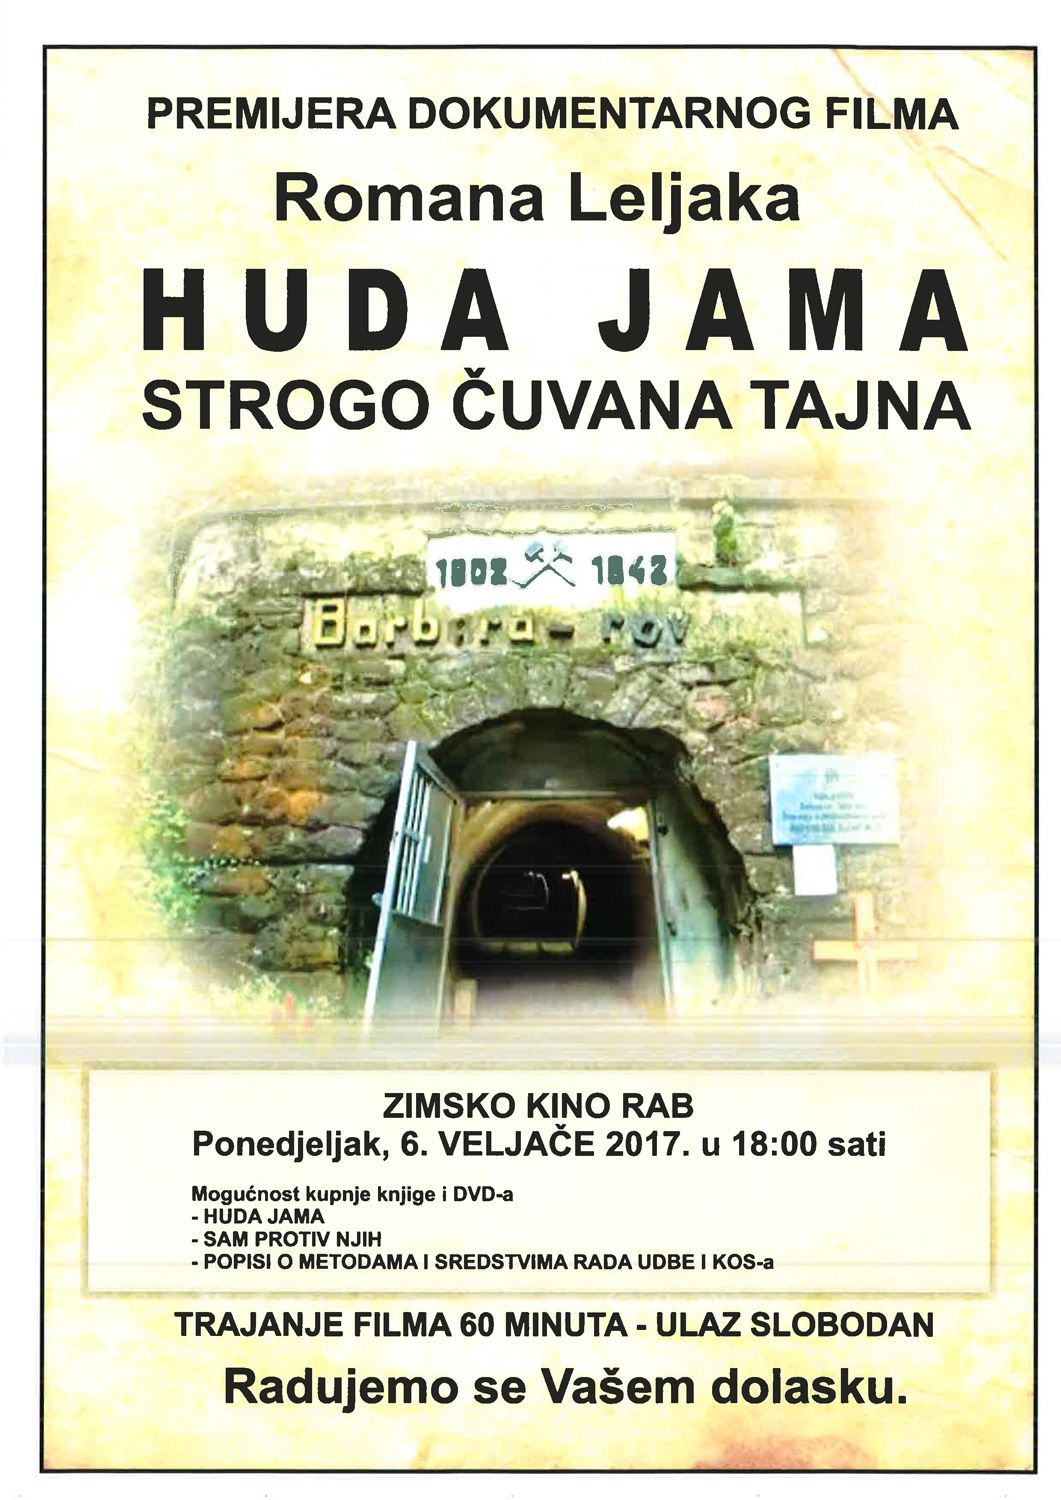 Rapska premijera dokumentarnog filma „HUDA JAMA – Strogo čuvana tajna” / Kino Rab – Pon., 6.2.2017. u 18h